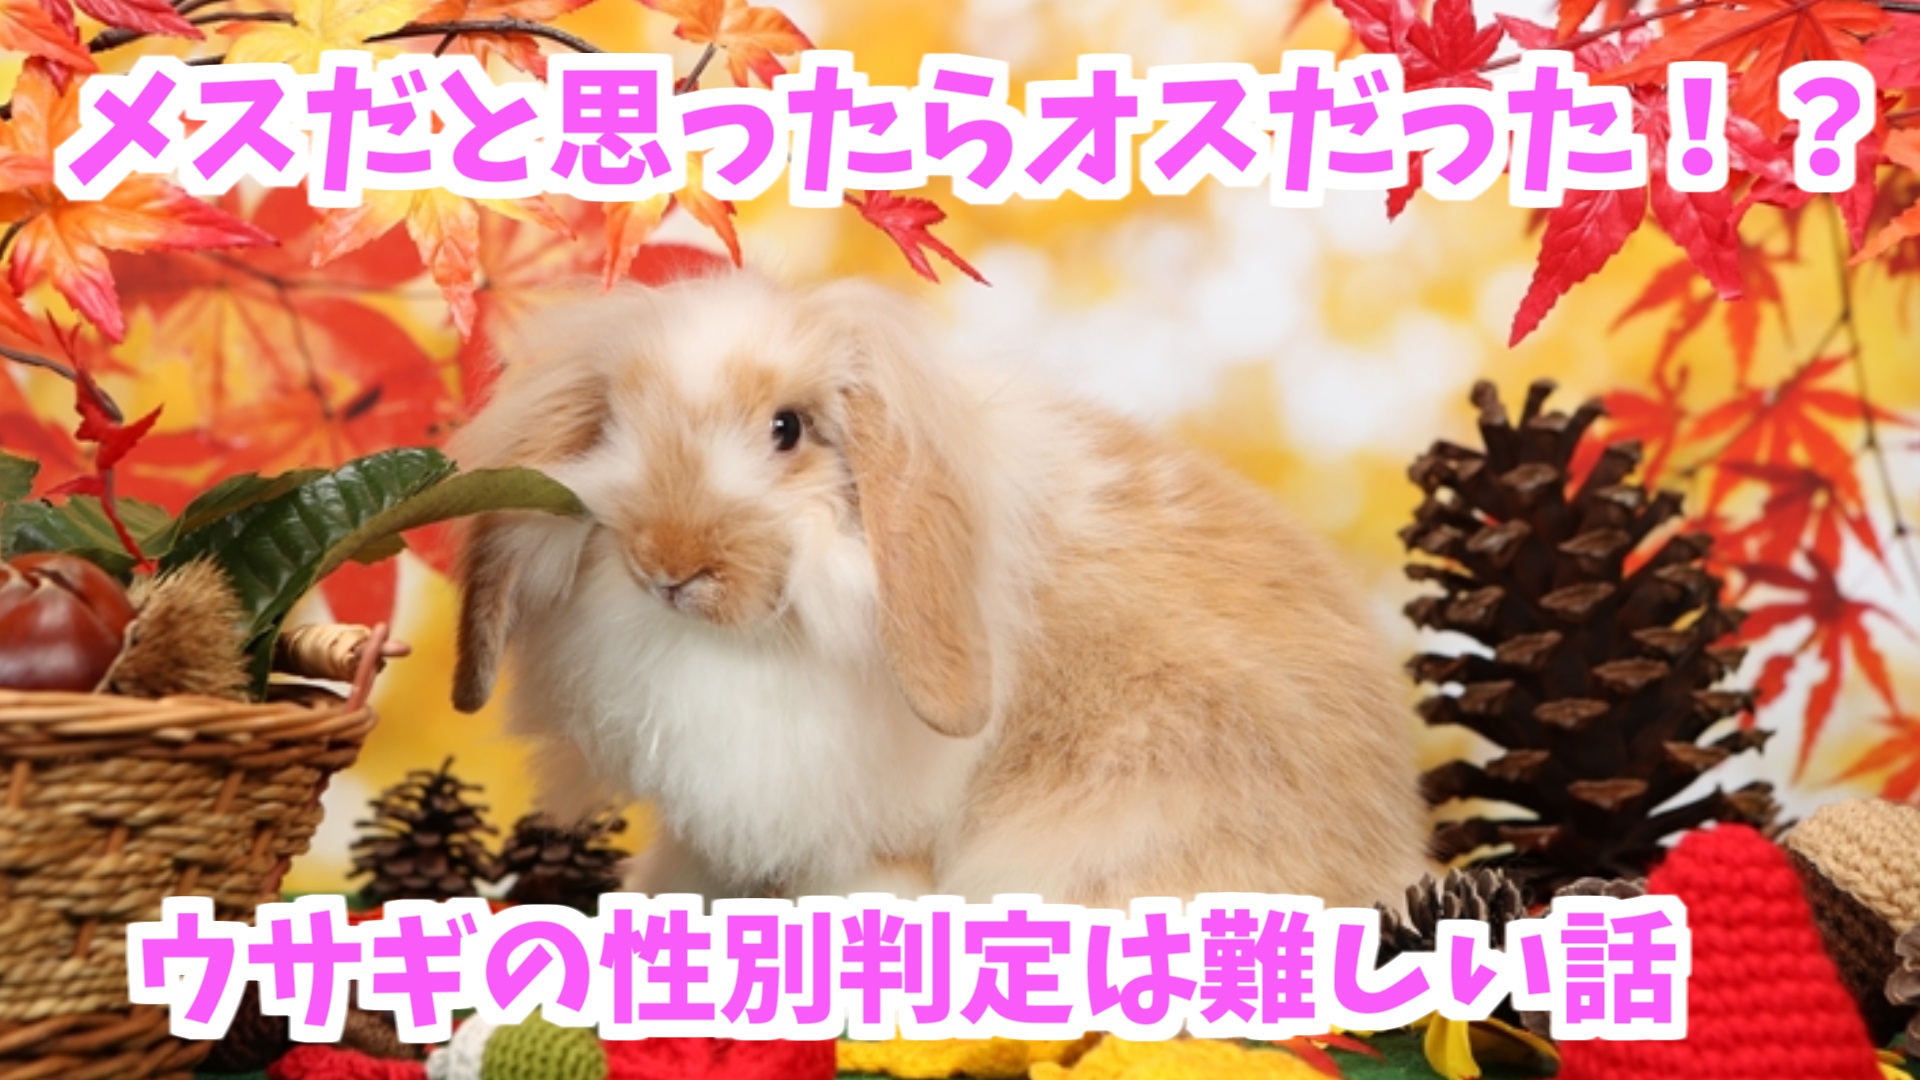 メスだと思ったらオスだった ウサギの性別判定は難しい話 Udokko Blog